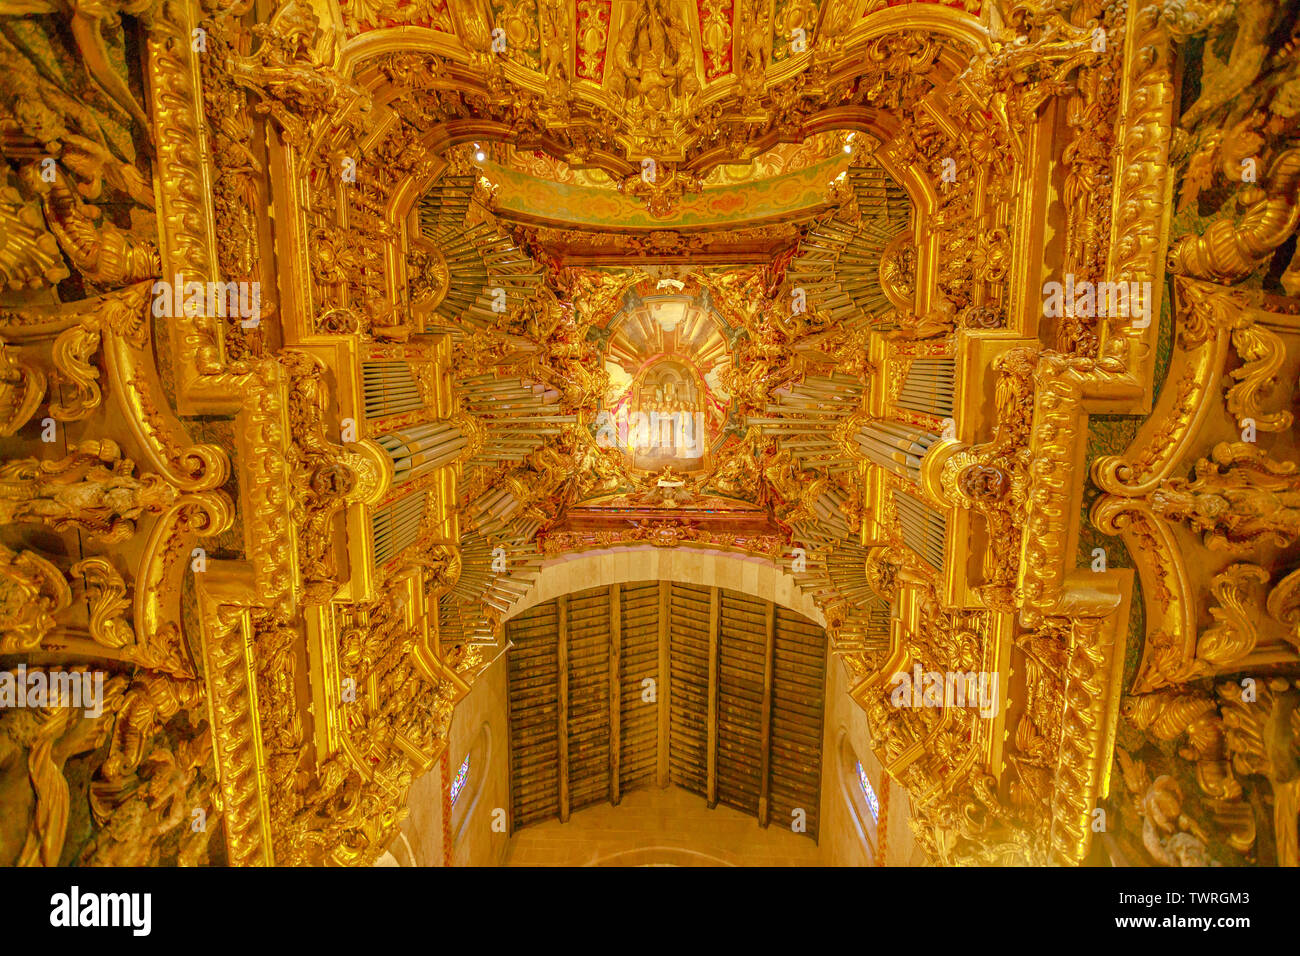 Braga, Portugal - 12 août 2017 : Orgue et plafond de la cathédrale de Braga. Cette chorale est décoré d'un plafond peint et sculpté en bois doré. Se Banque D'Images